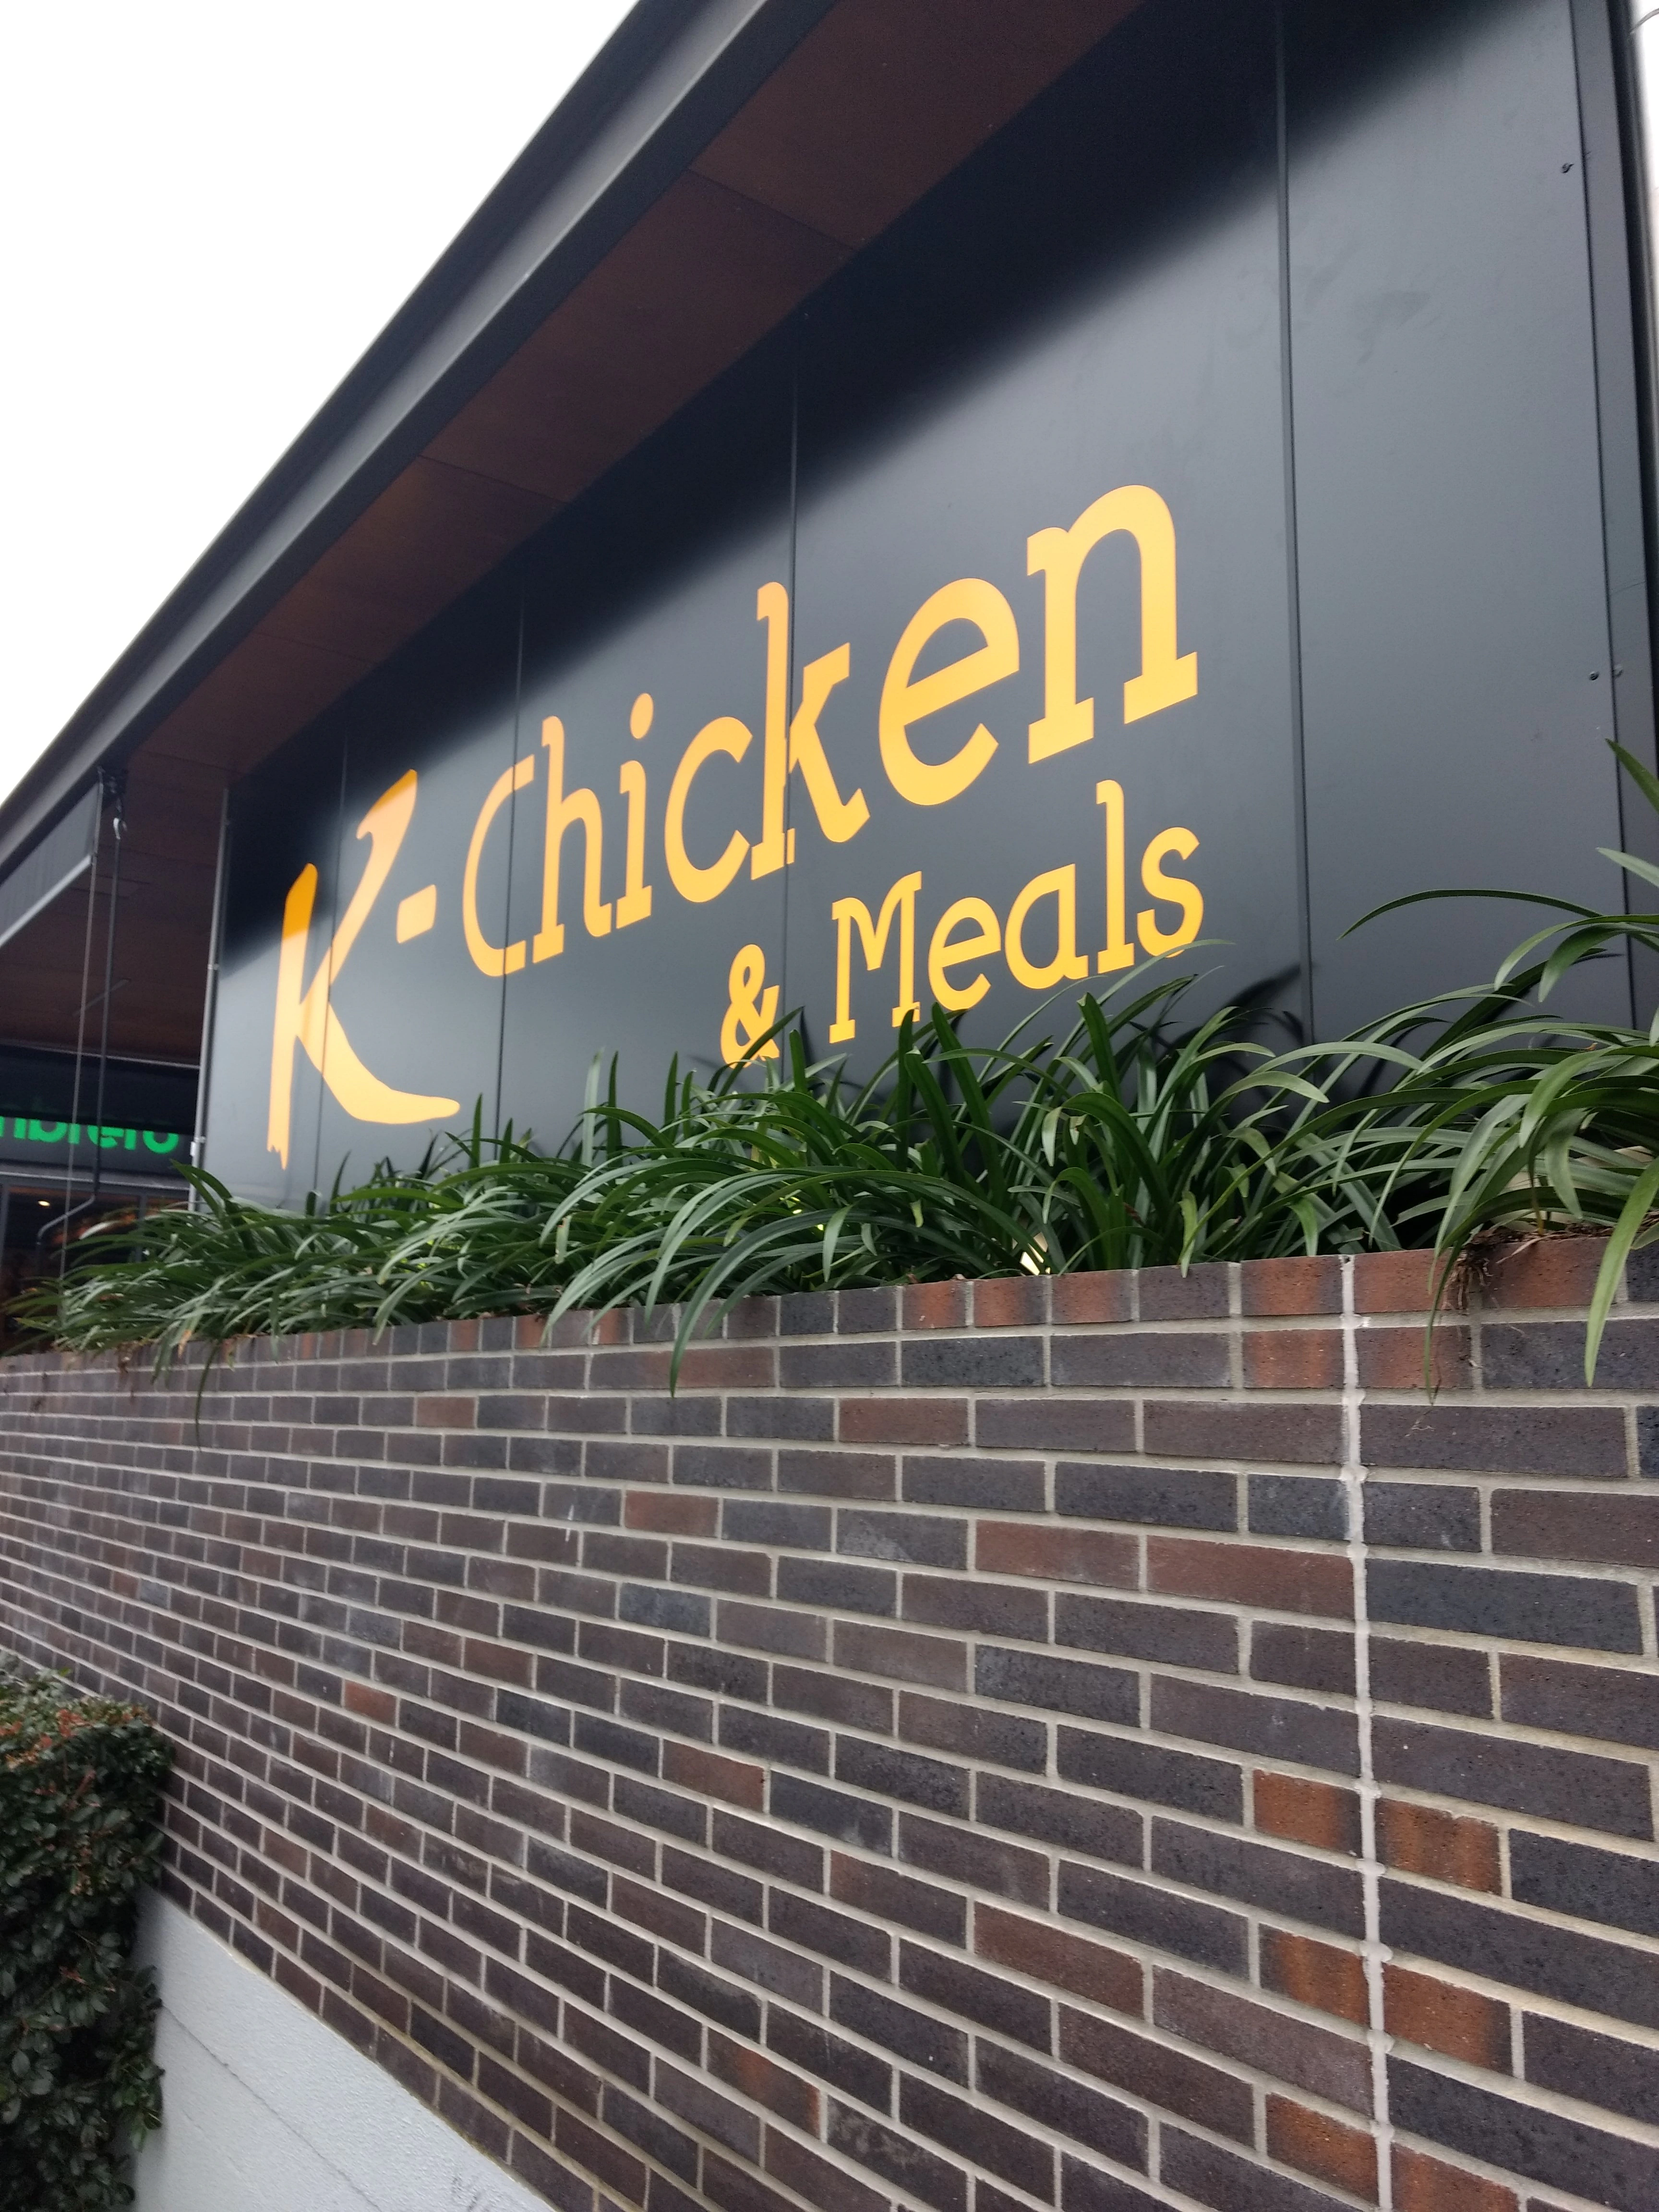 K-Chicken & Meals